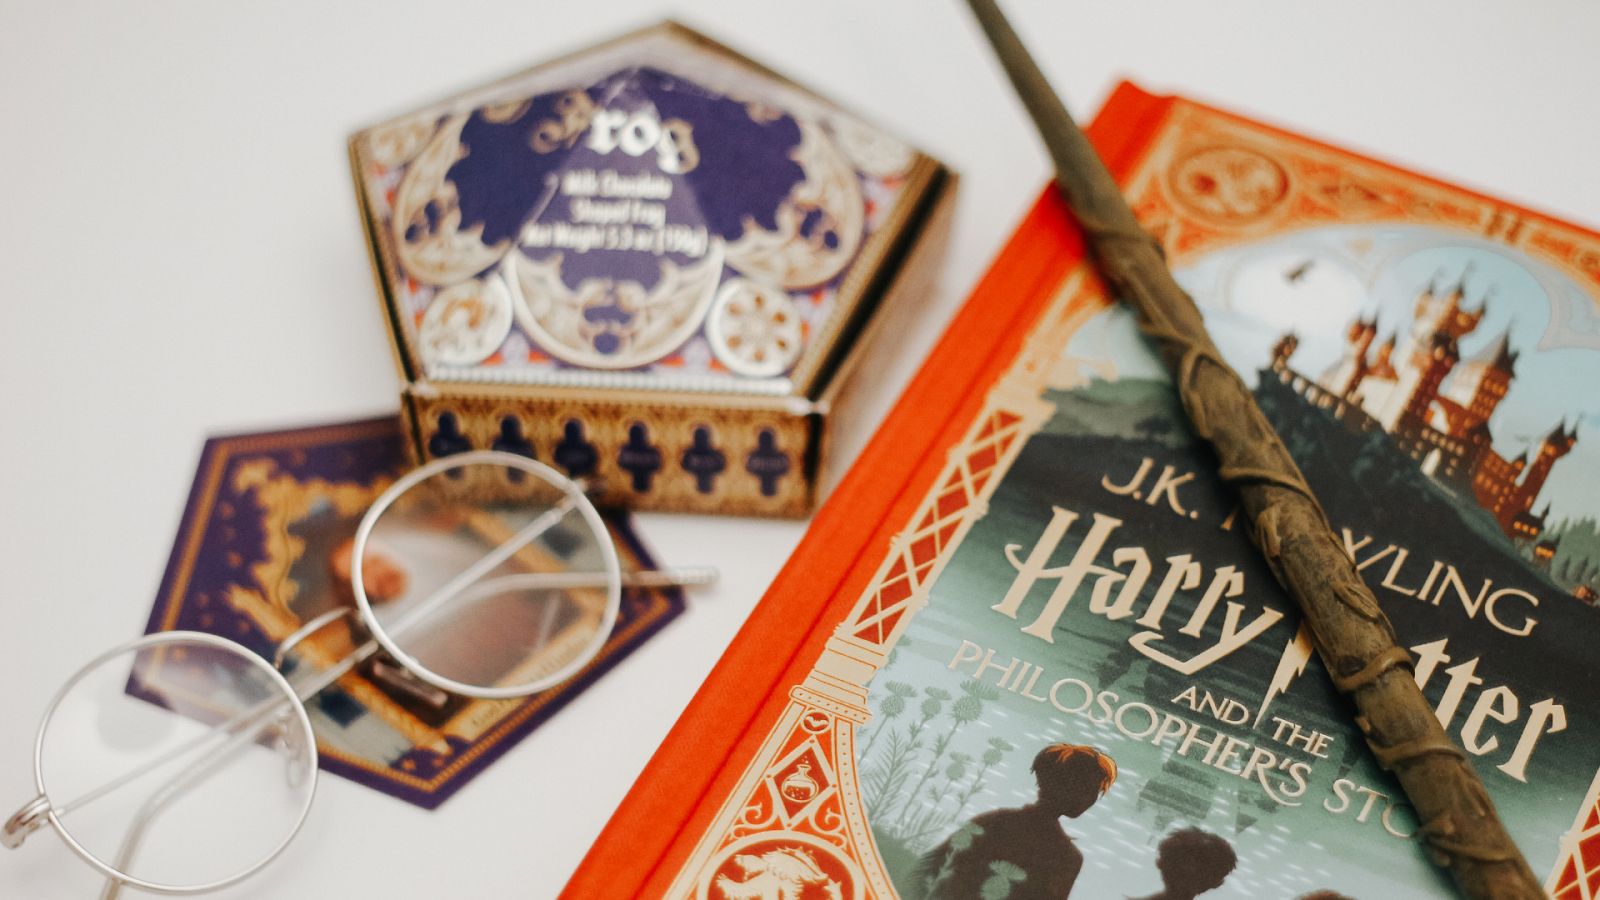 Harry Potter y las reliquias de la muerte (20° aniversario Slytherin)